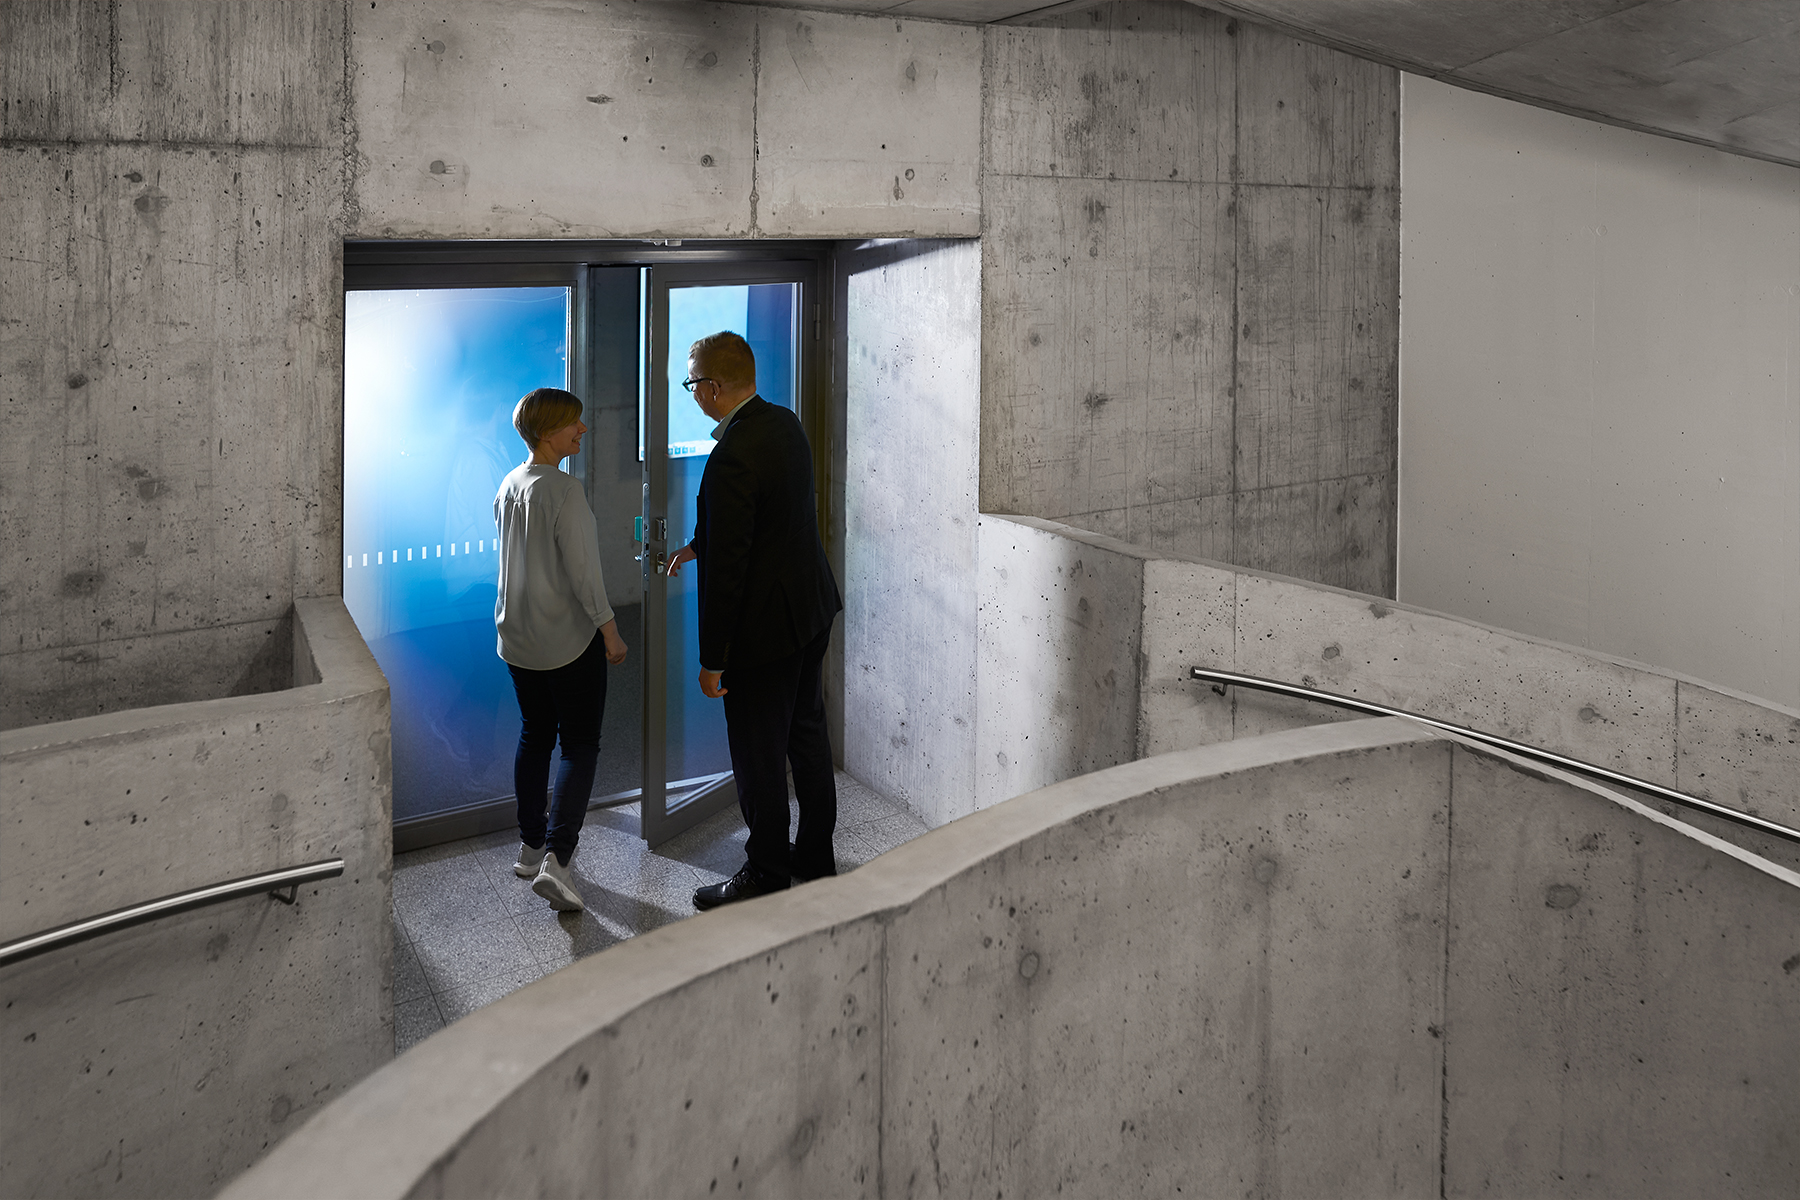 Kuvituskuva, kaksi ihmistä menossa ovesta sisälle harmaassa betoniportaikossa.